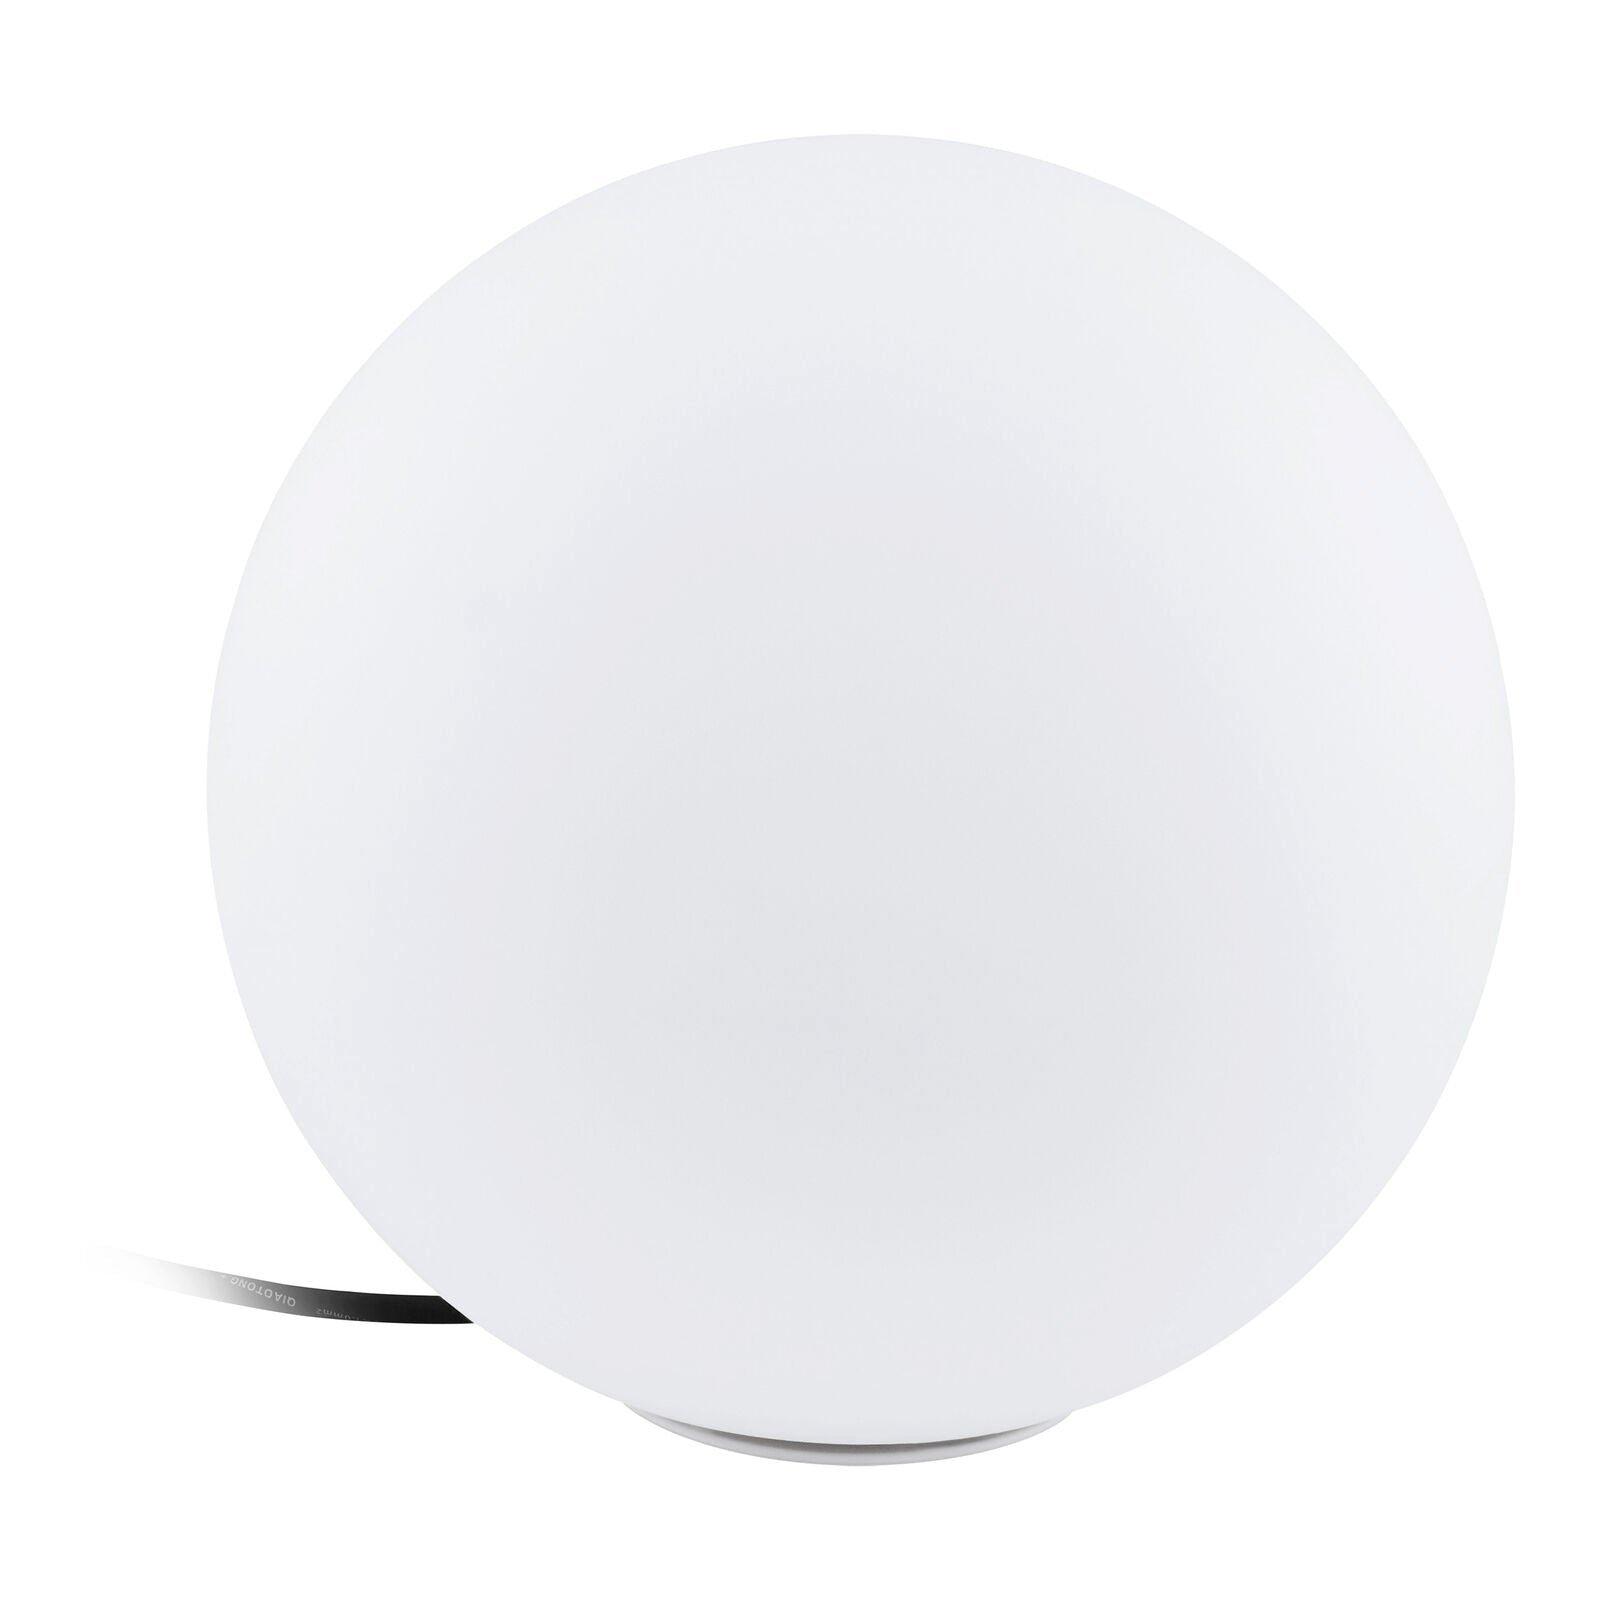 IP65 Outdoor Garden Ball Light White Plastic 1 x 40W E27 Bulb 300mm Globe